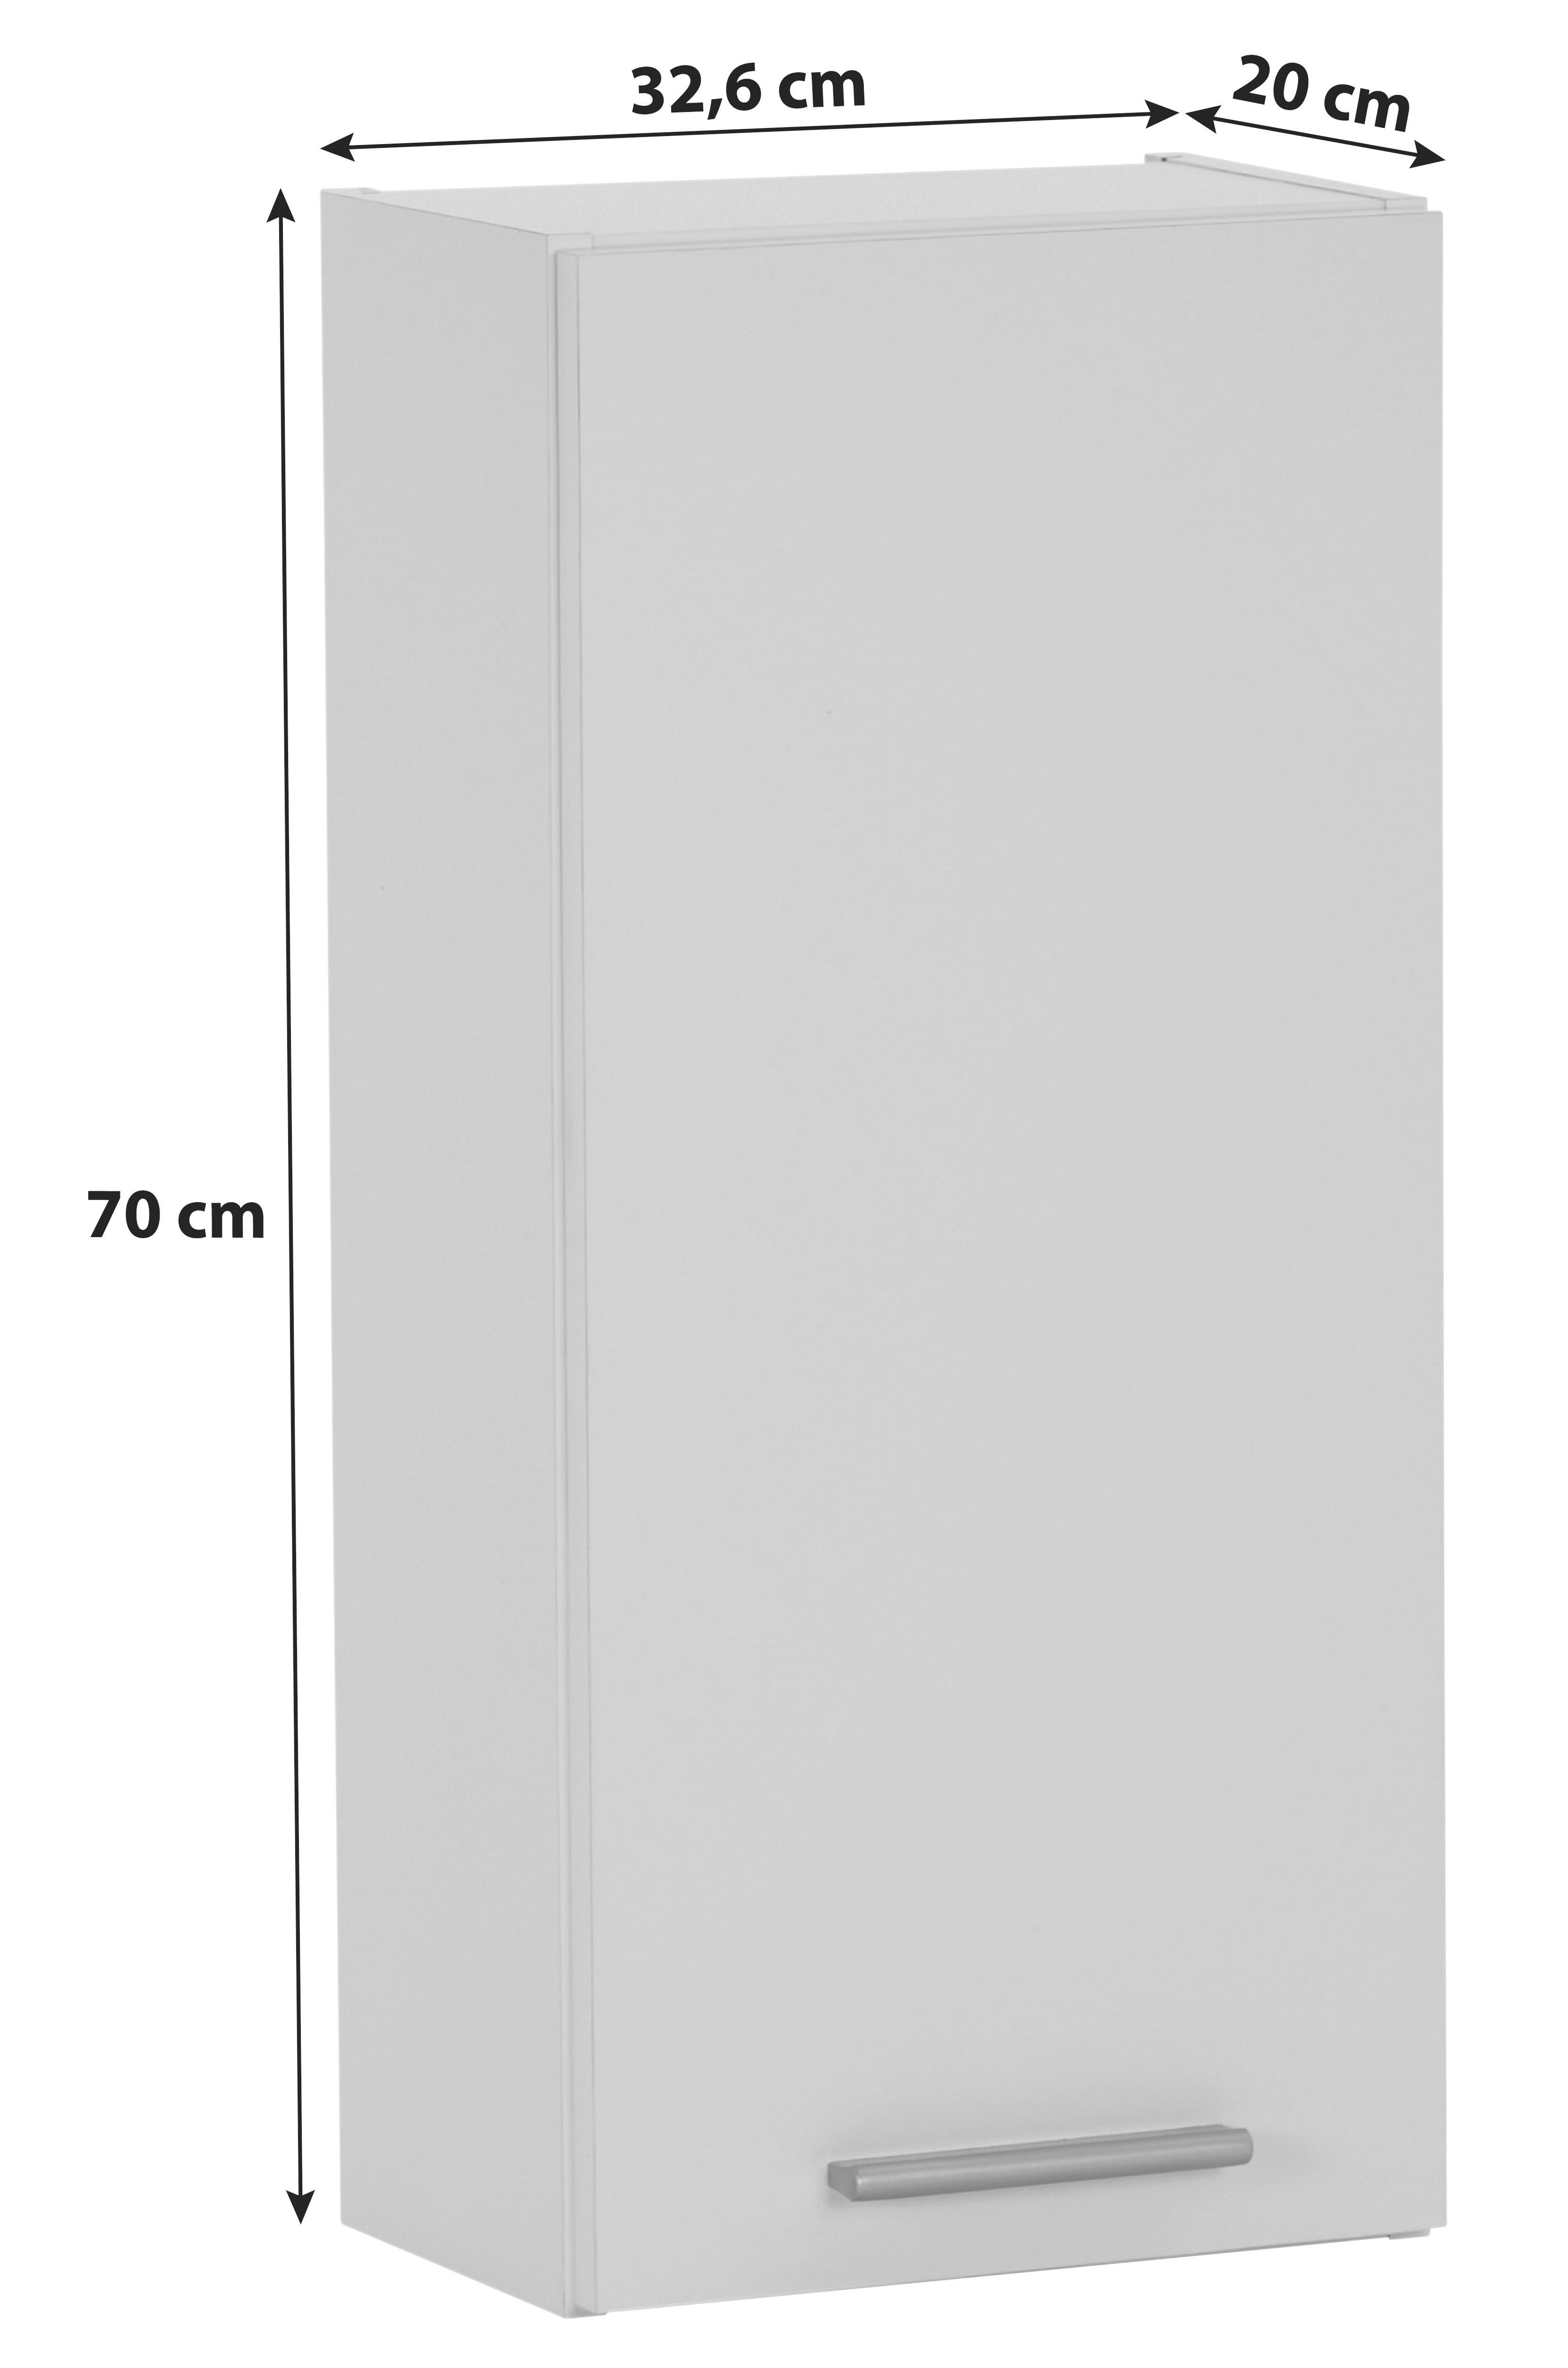 Hängeschrank Mx 176 - Verona Vr 04 - Weiß, KONVENTIONELL, Holzwerkstoff (32,6/70/20cm)